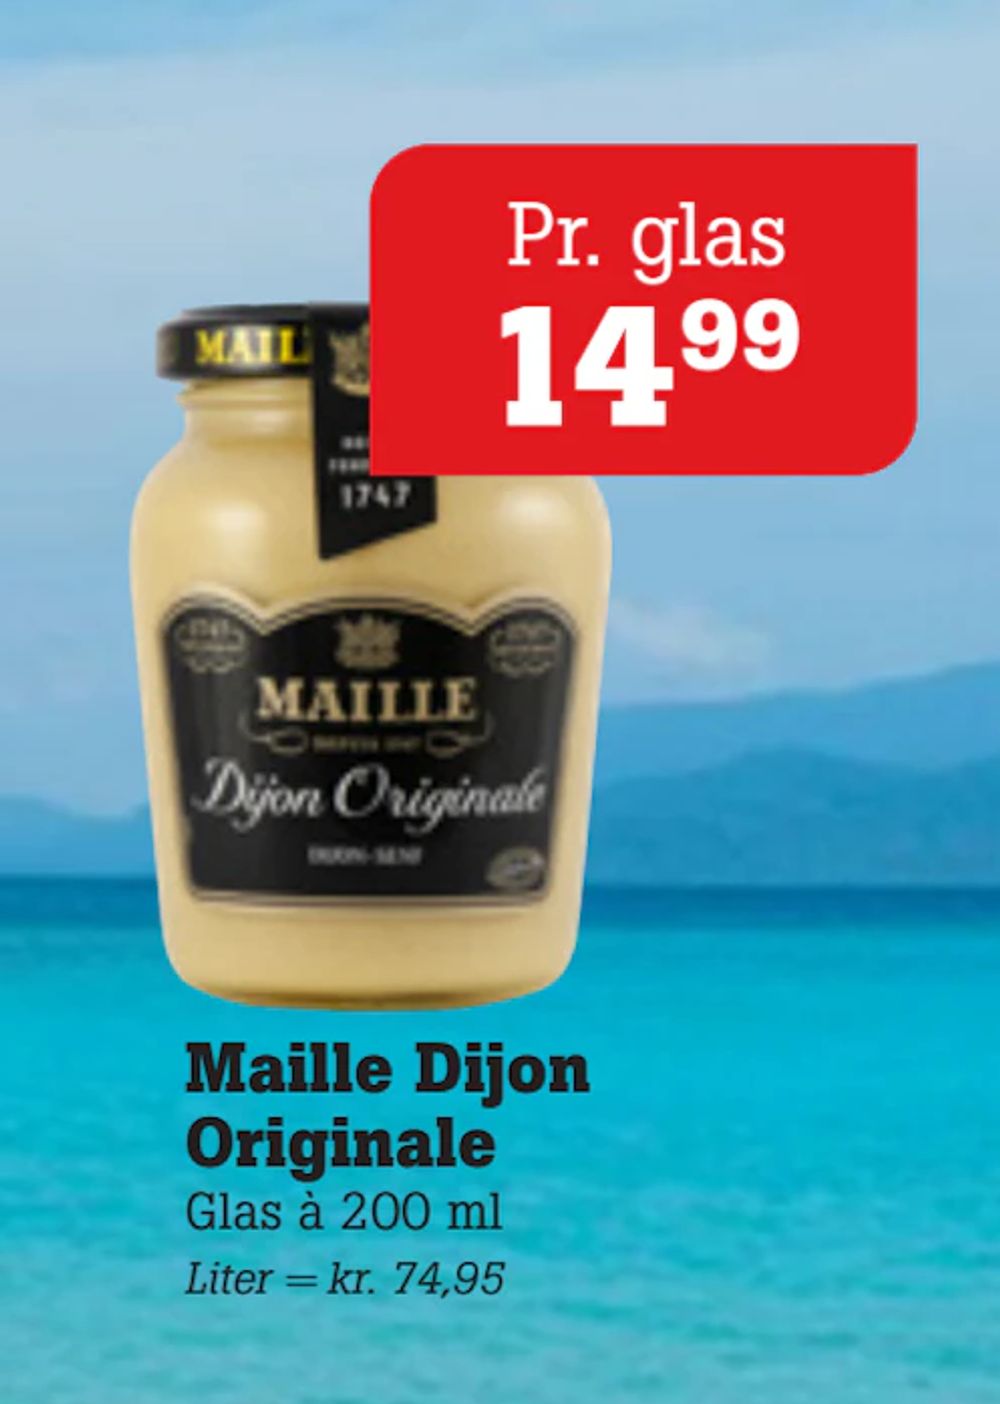 Tilbud på Maille Dijon Originale fra Poetzsch Padborg til 14,99 kr.